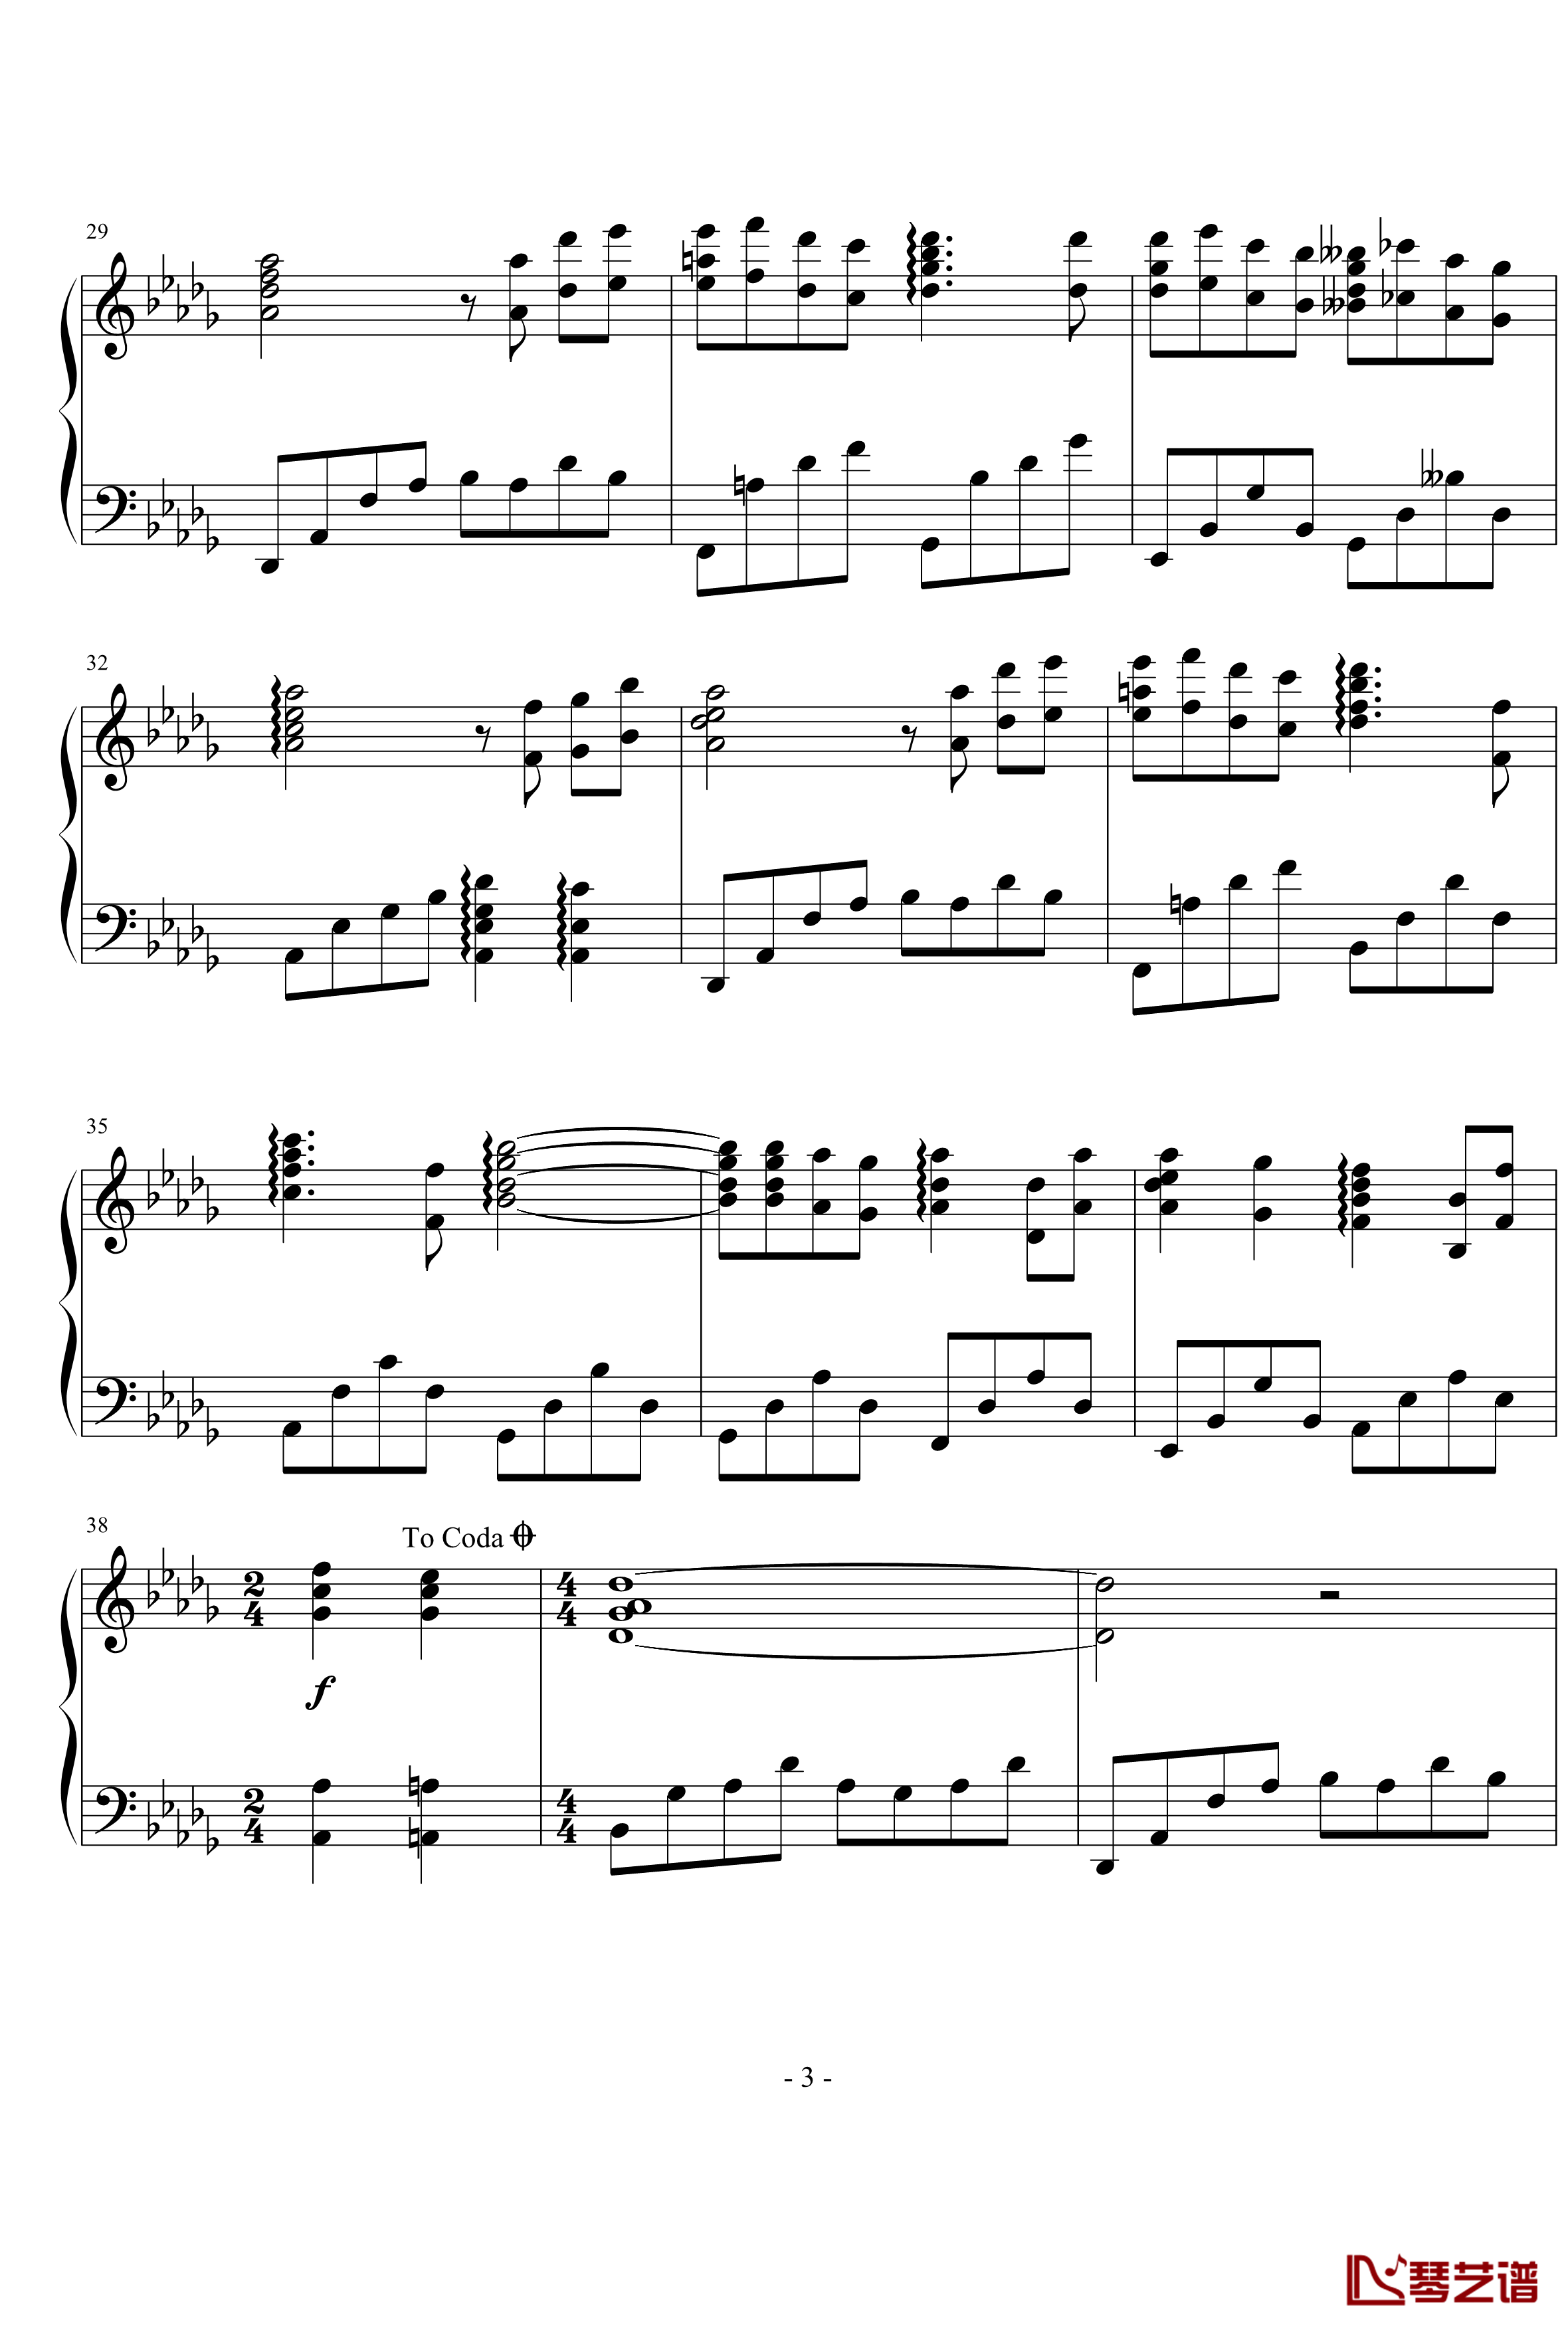 幽灵公主插曲钢琴谱-アシタカとサン和声修改版-幽灵公主3